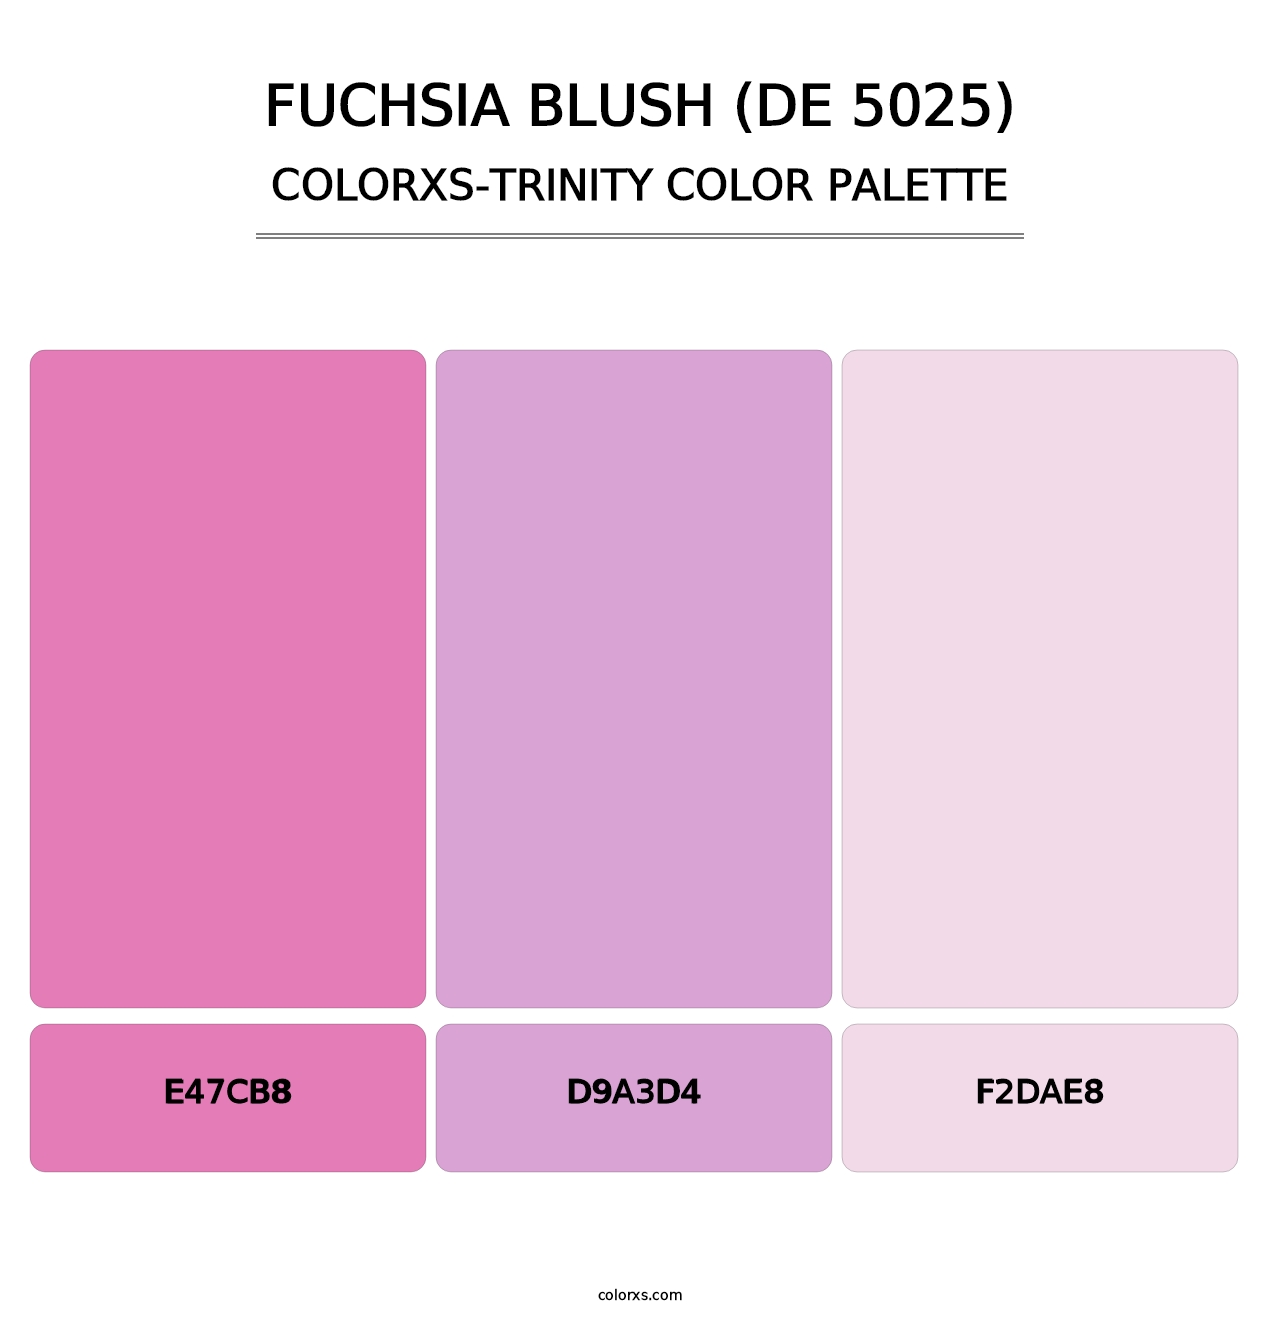 Fuchsia Blush (DE 5025) - Colorxs Trinity Palette